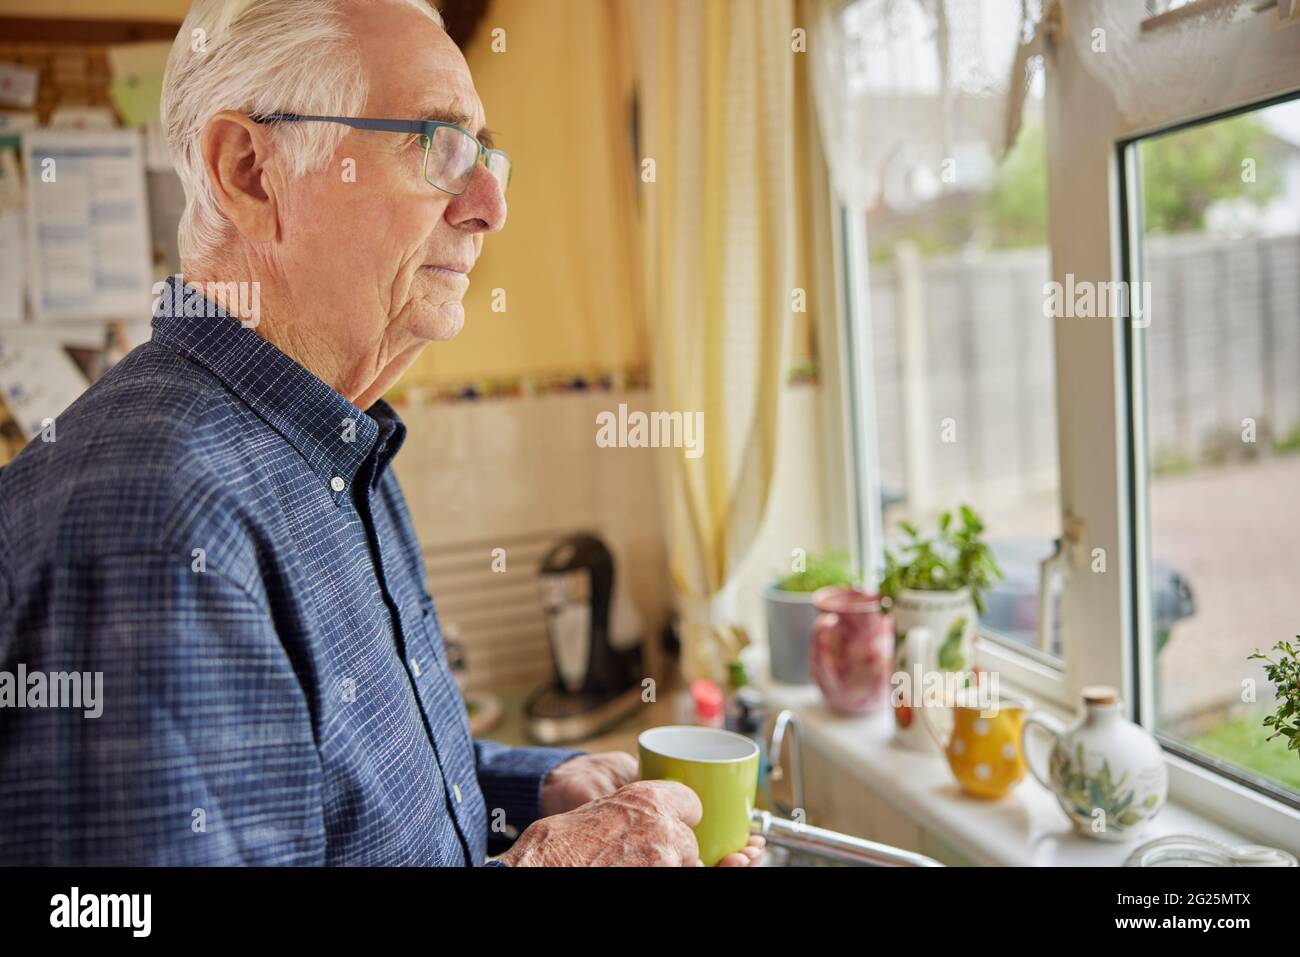 Homme solitaire senior qui a l'air mécontent de la coupe de la fenêtre Banque D'Images